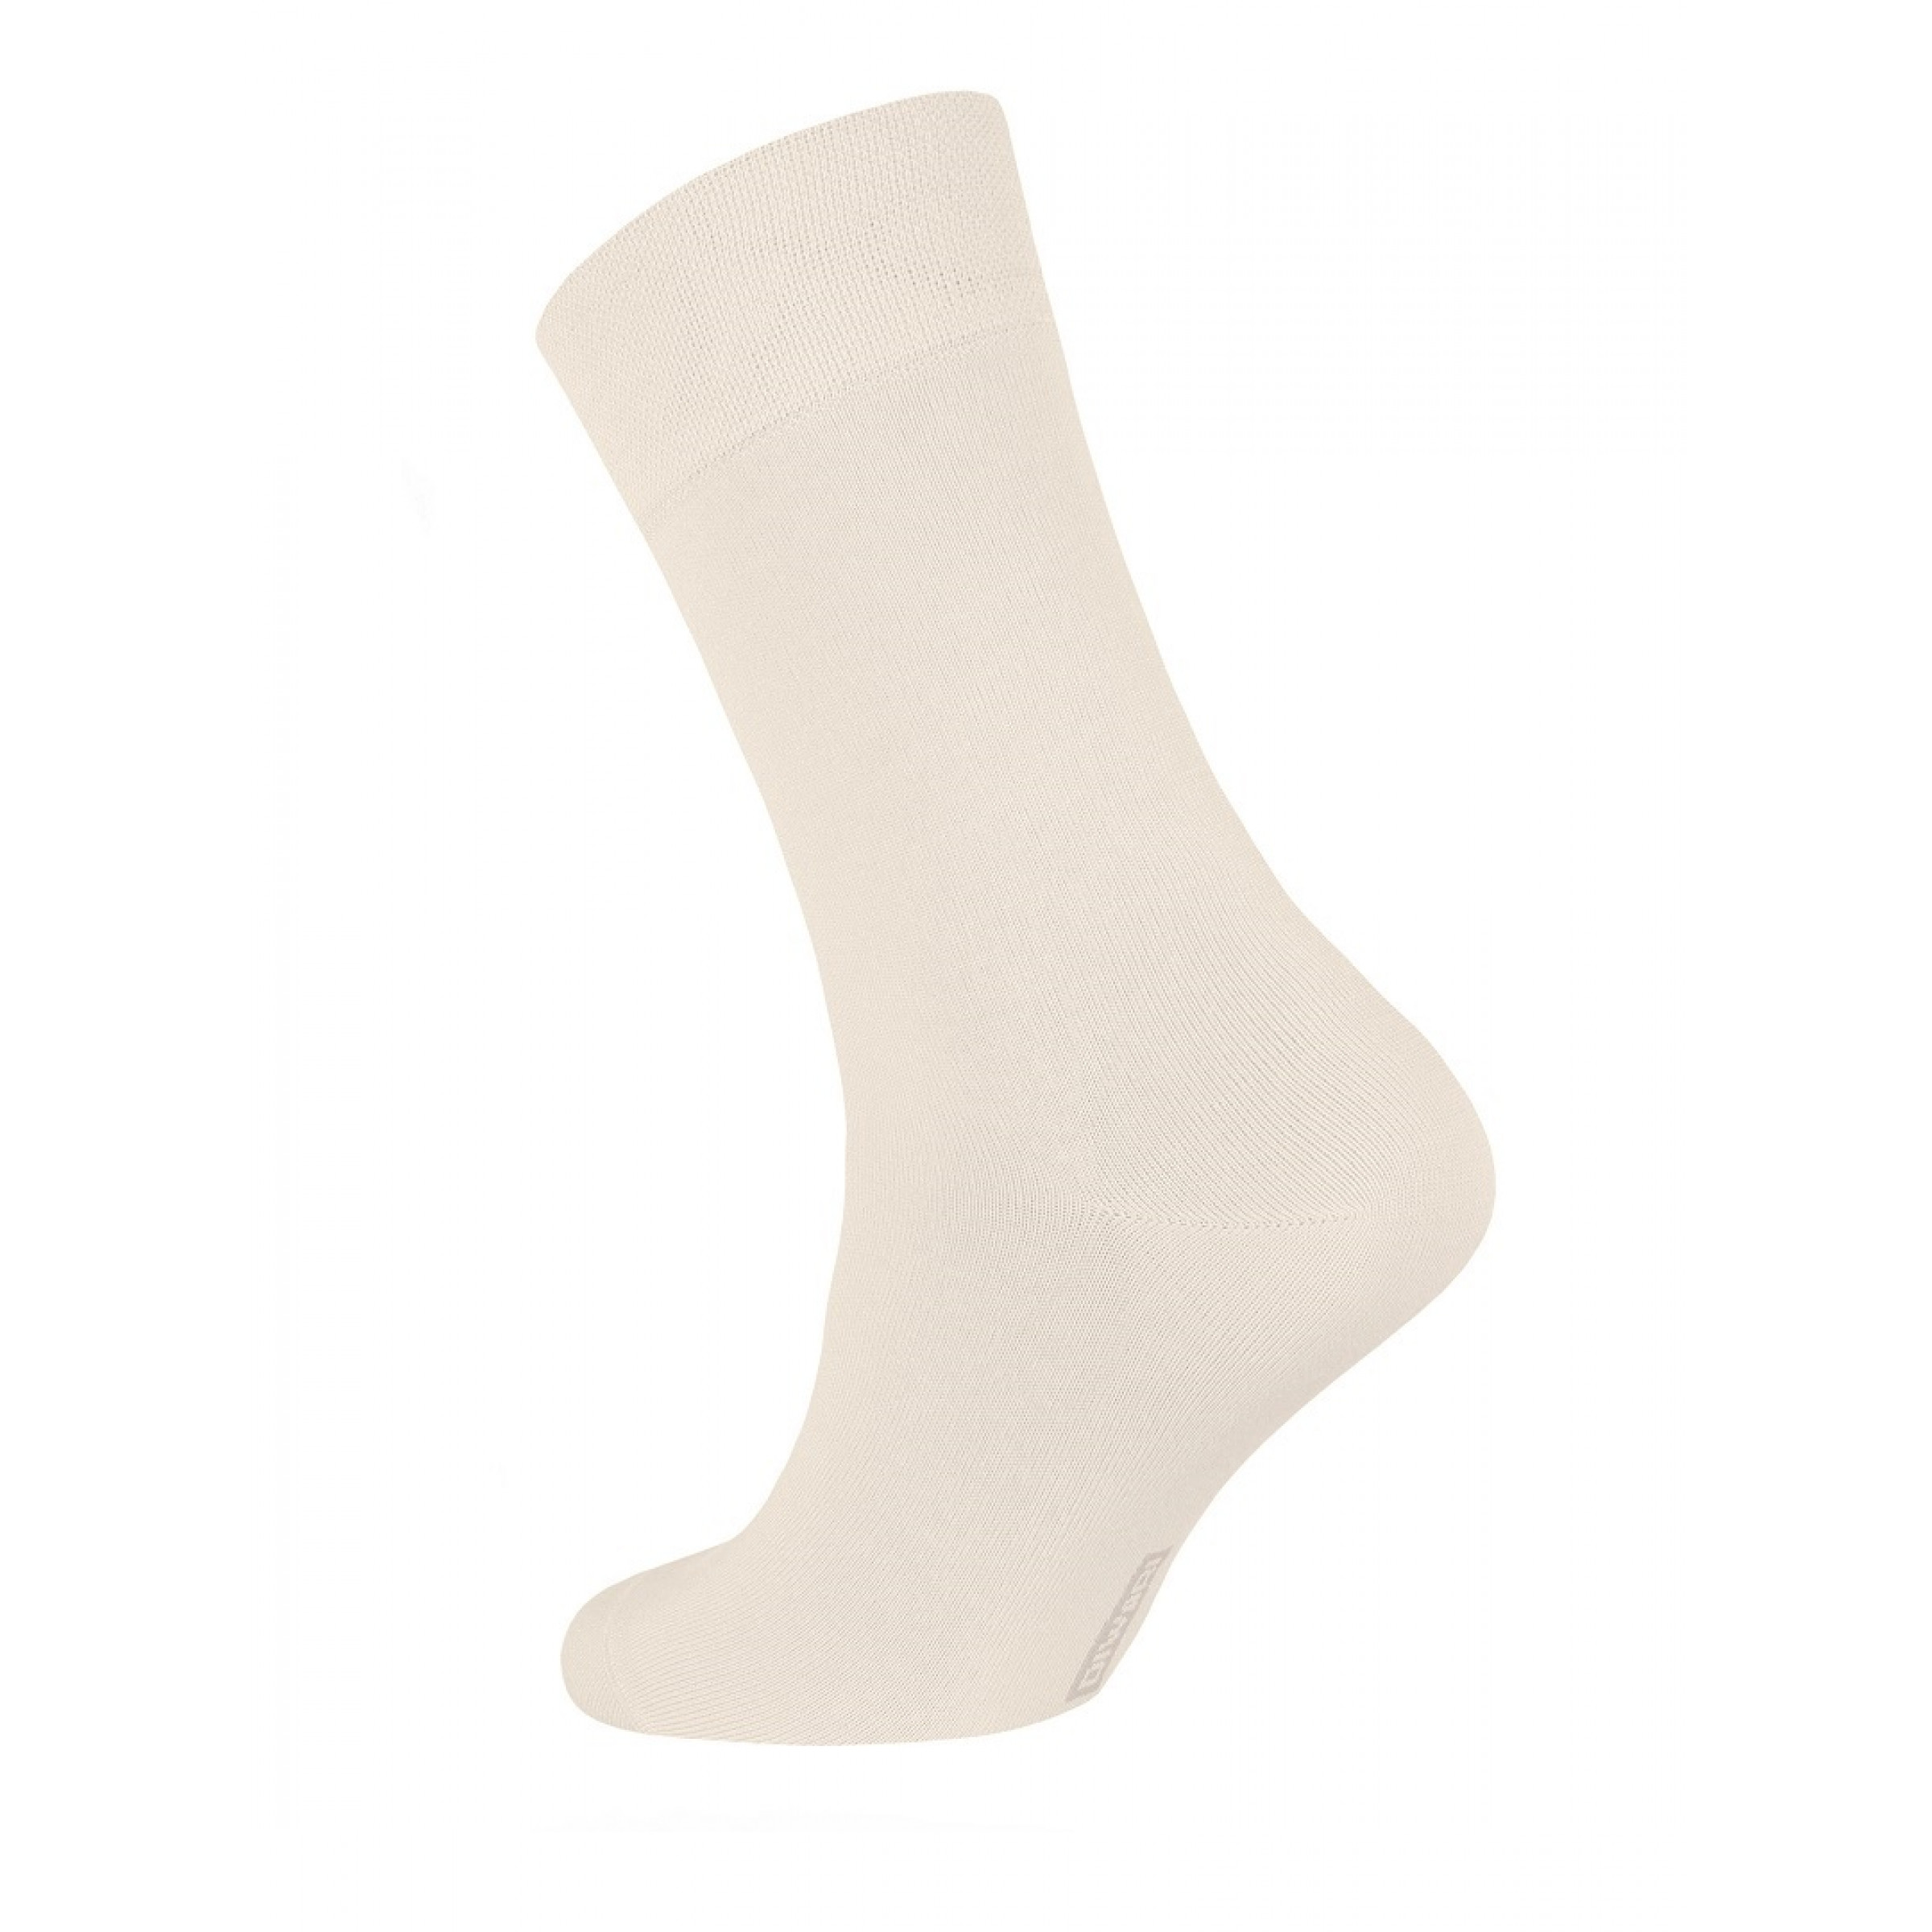 Мужские носки Conte Classic Cool Effect 42-43 размер бежевый цвет